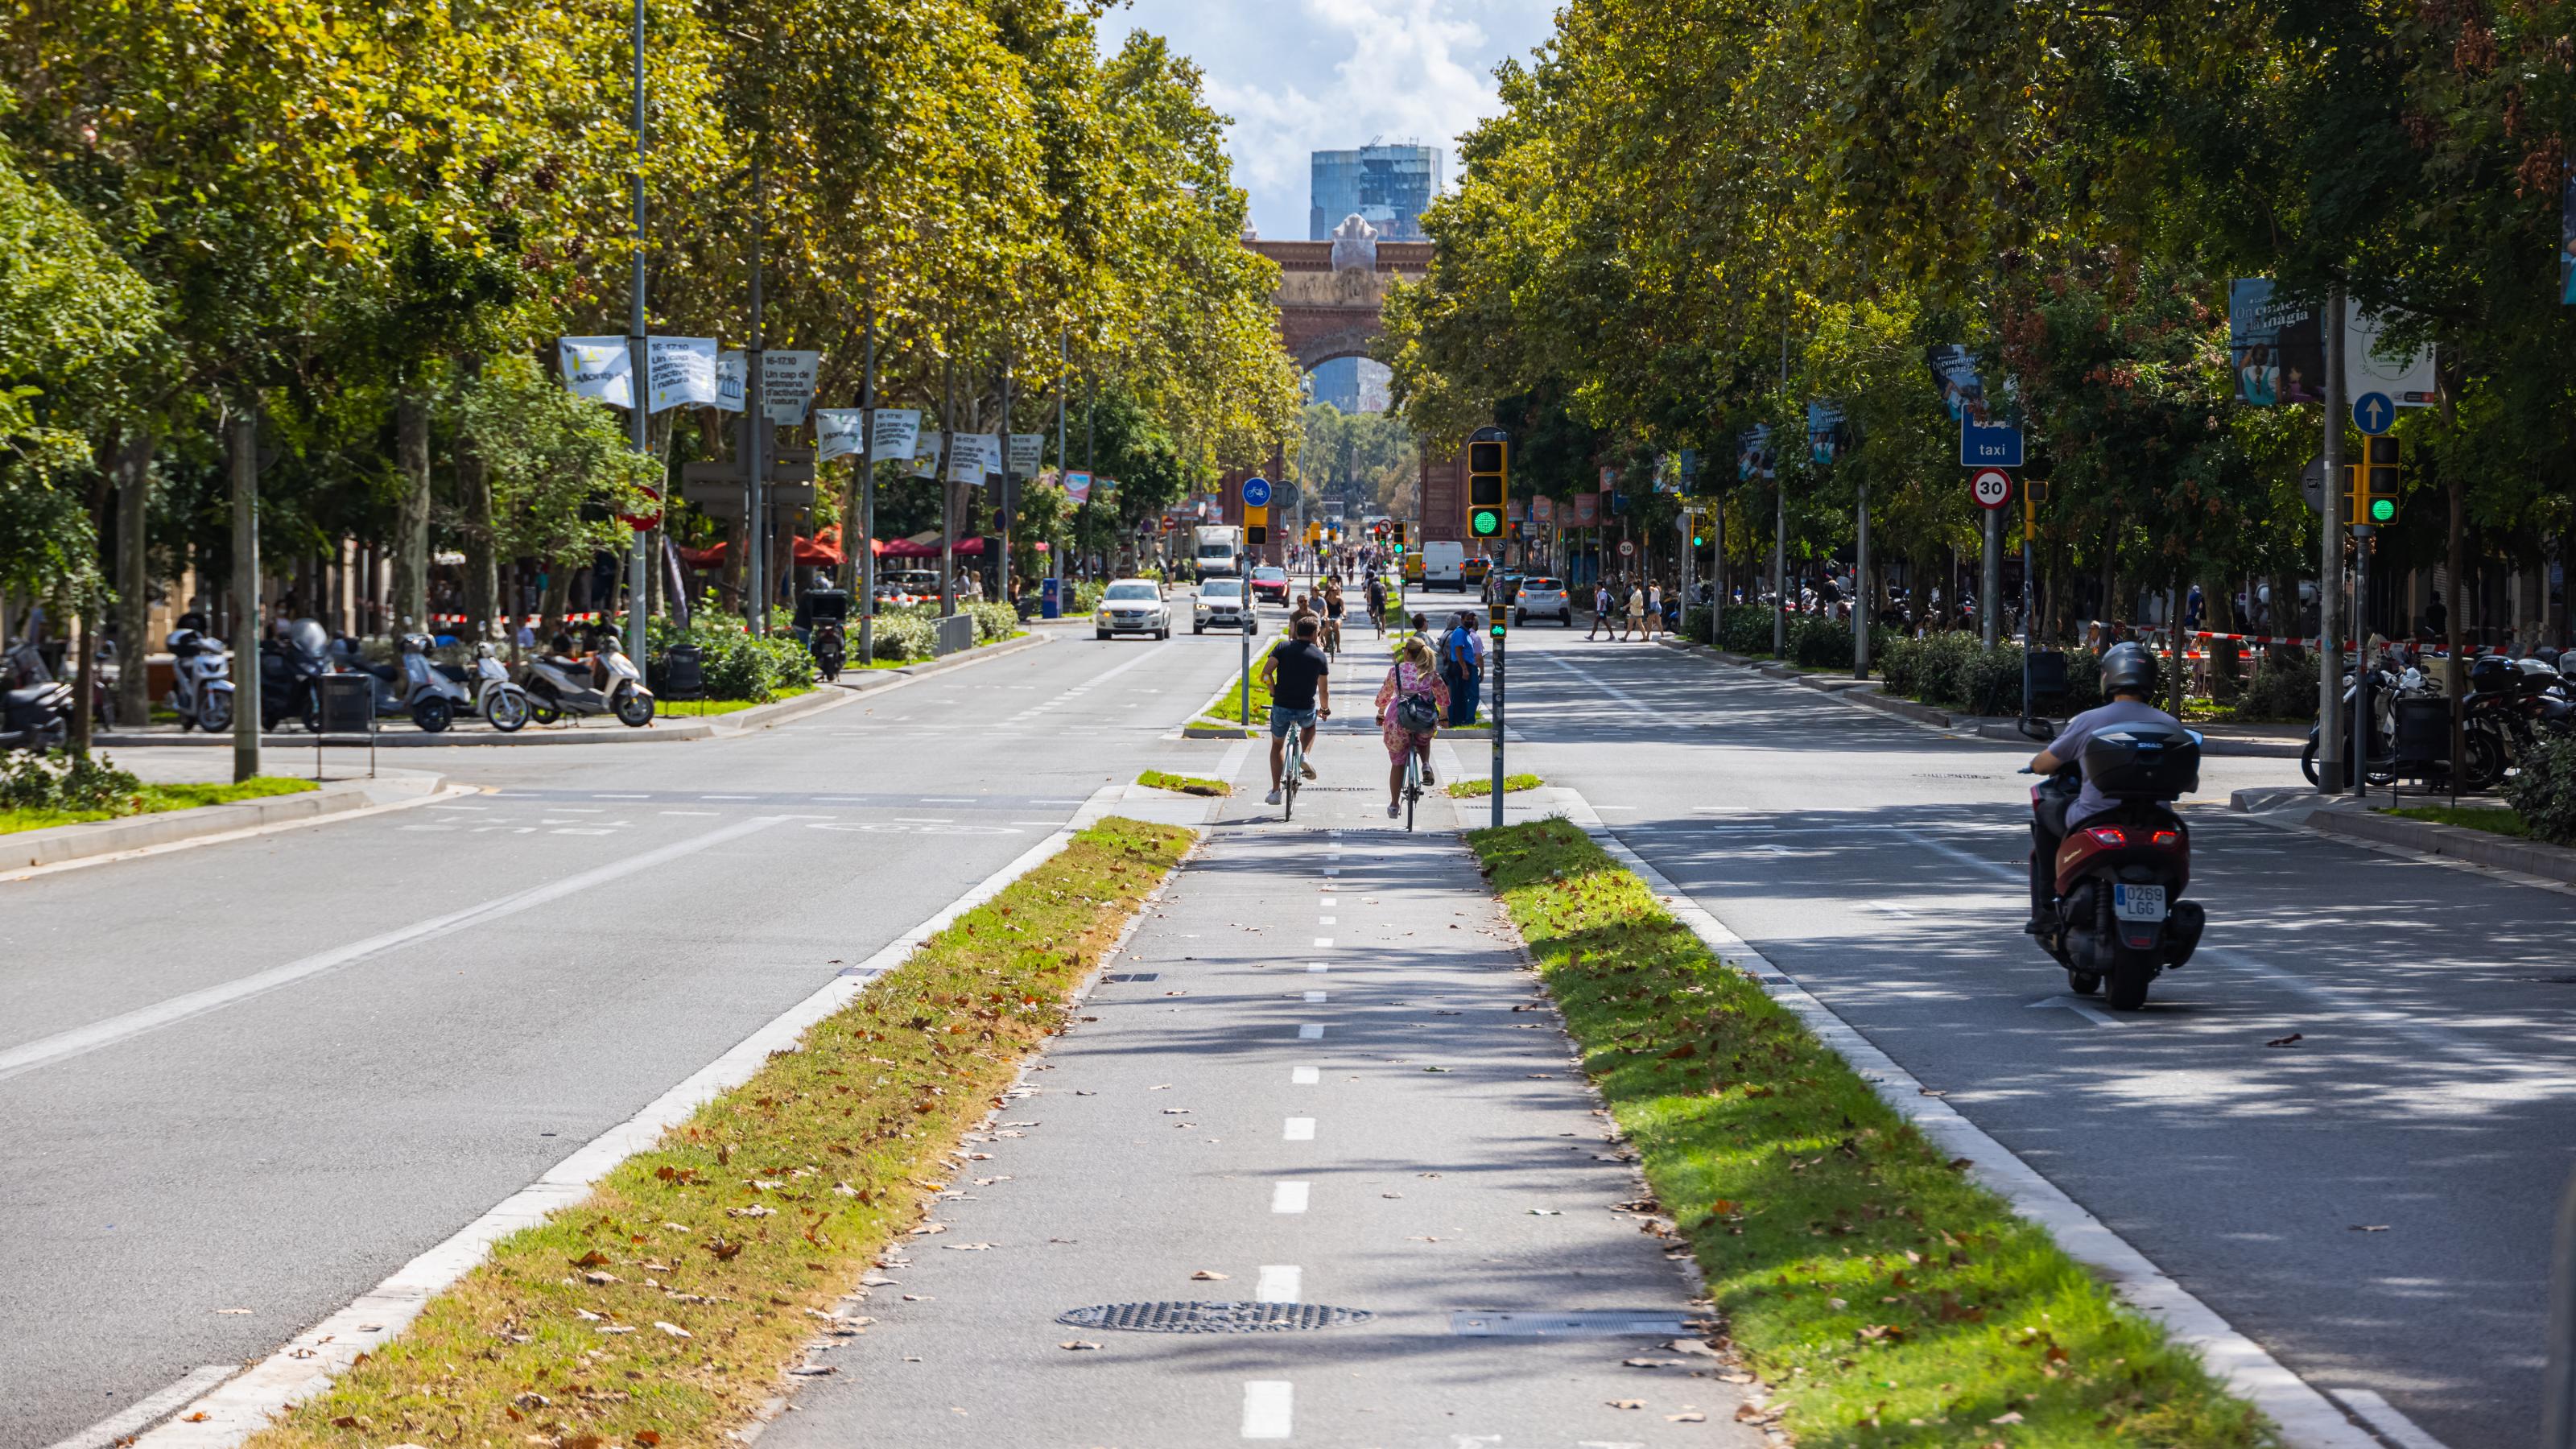 Inmitten einer von Bäumen gesäumten vierspurigen Straße sind zwei Radfahrende auf einem breiten Radweg unterwegs, der zusätzlich mit Grünstreifen von den Fahrbahnen links und rechts abgetrennt ist.